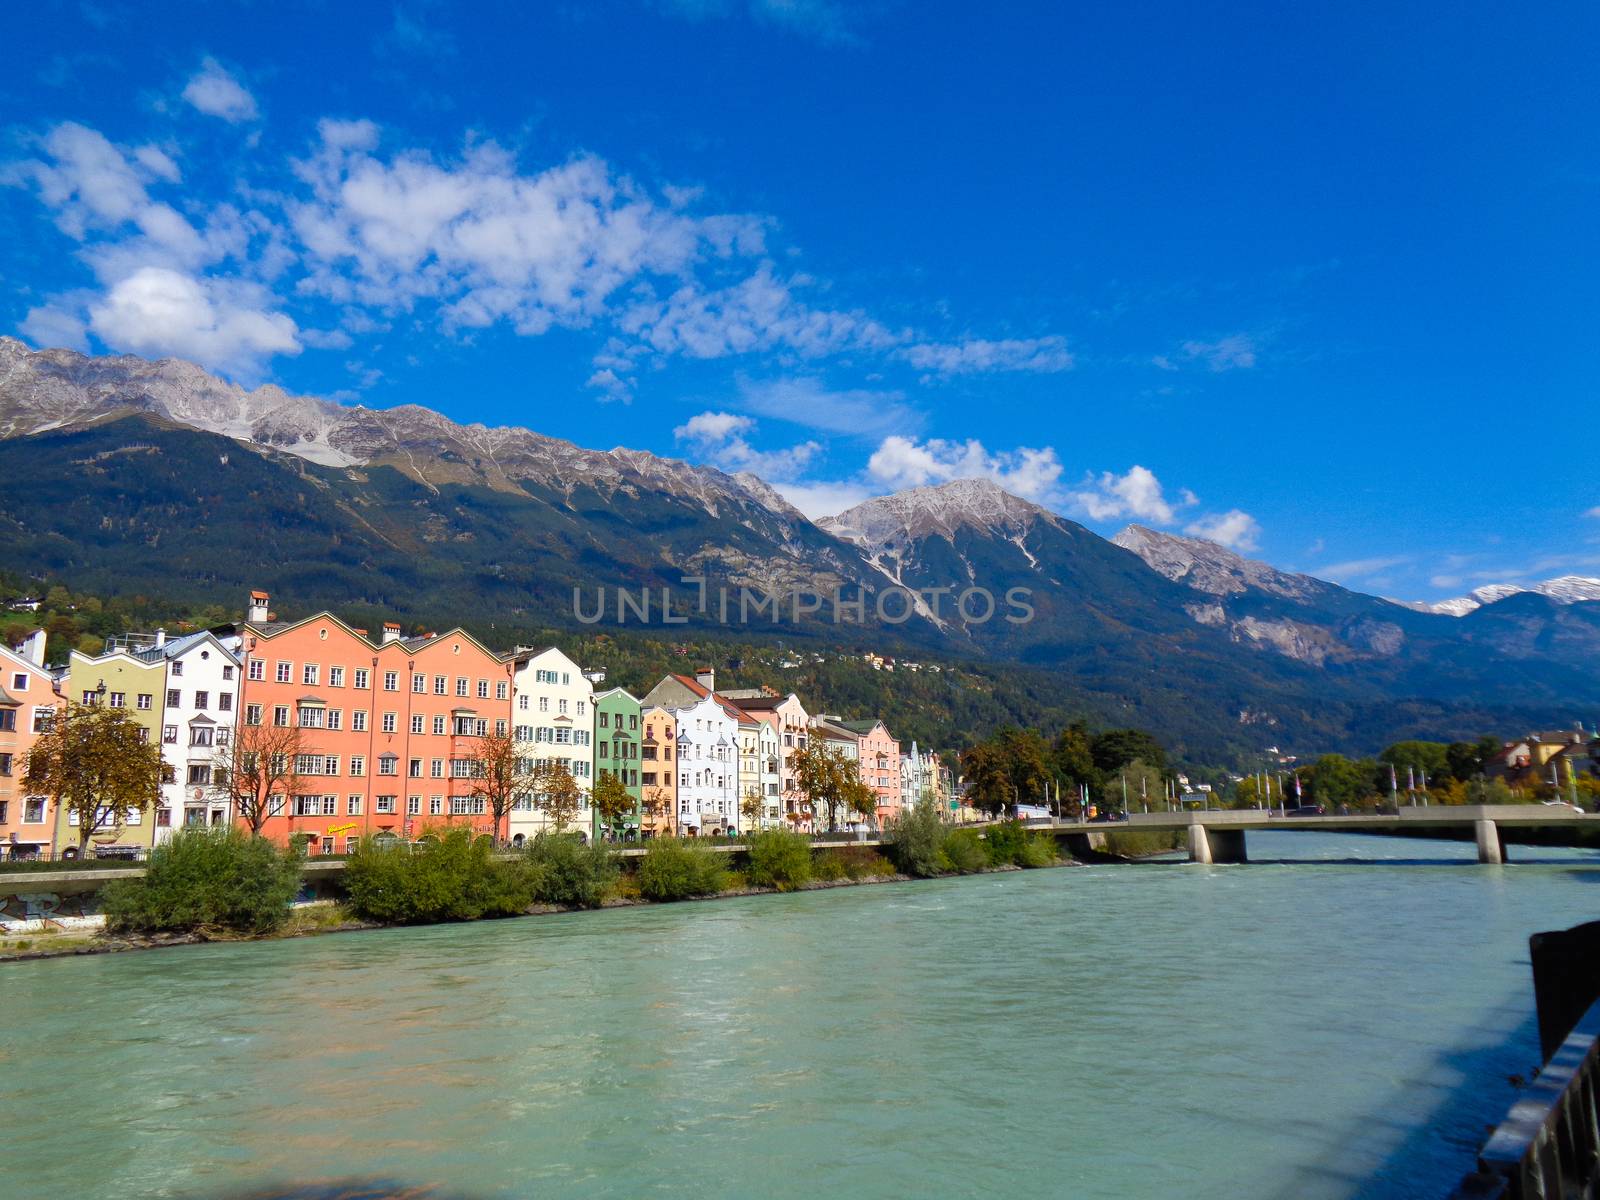 Innsbruck in Austria by Tevion25